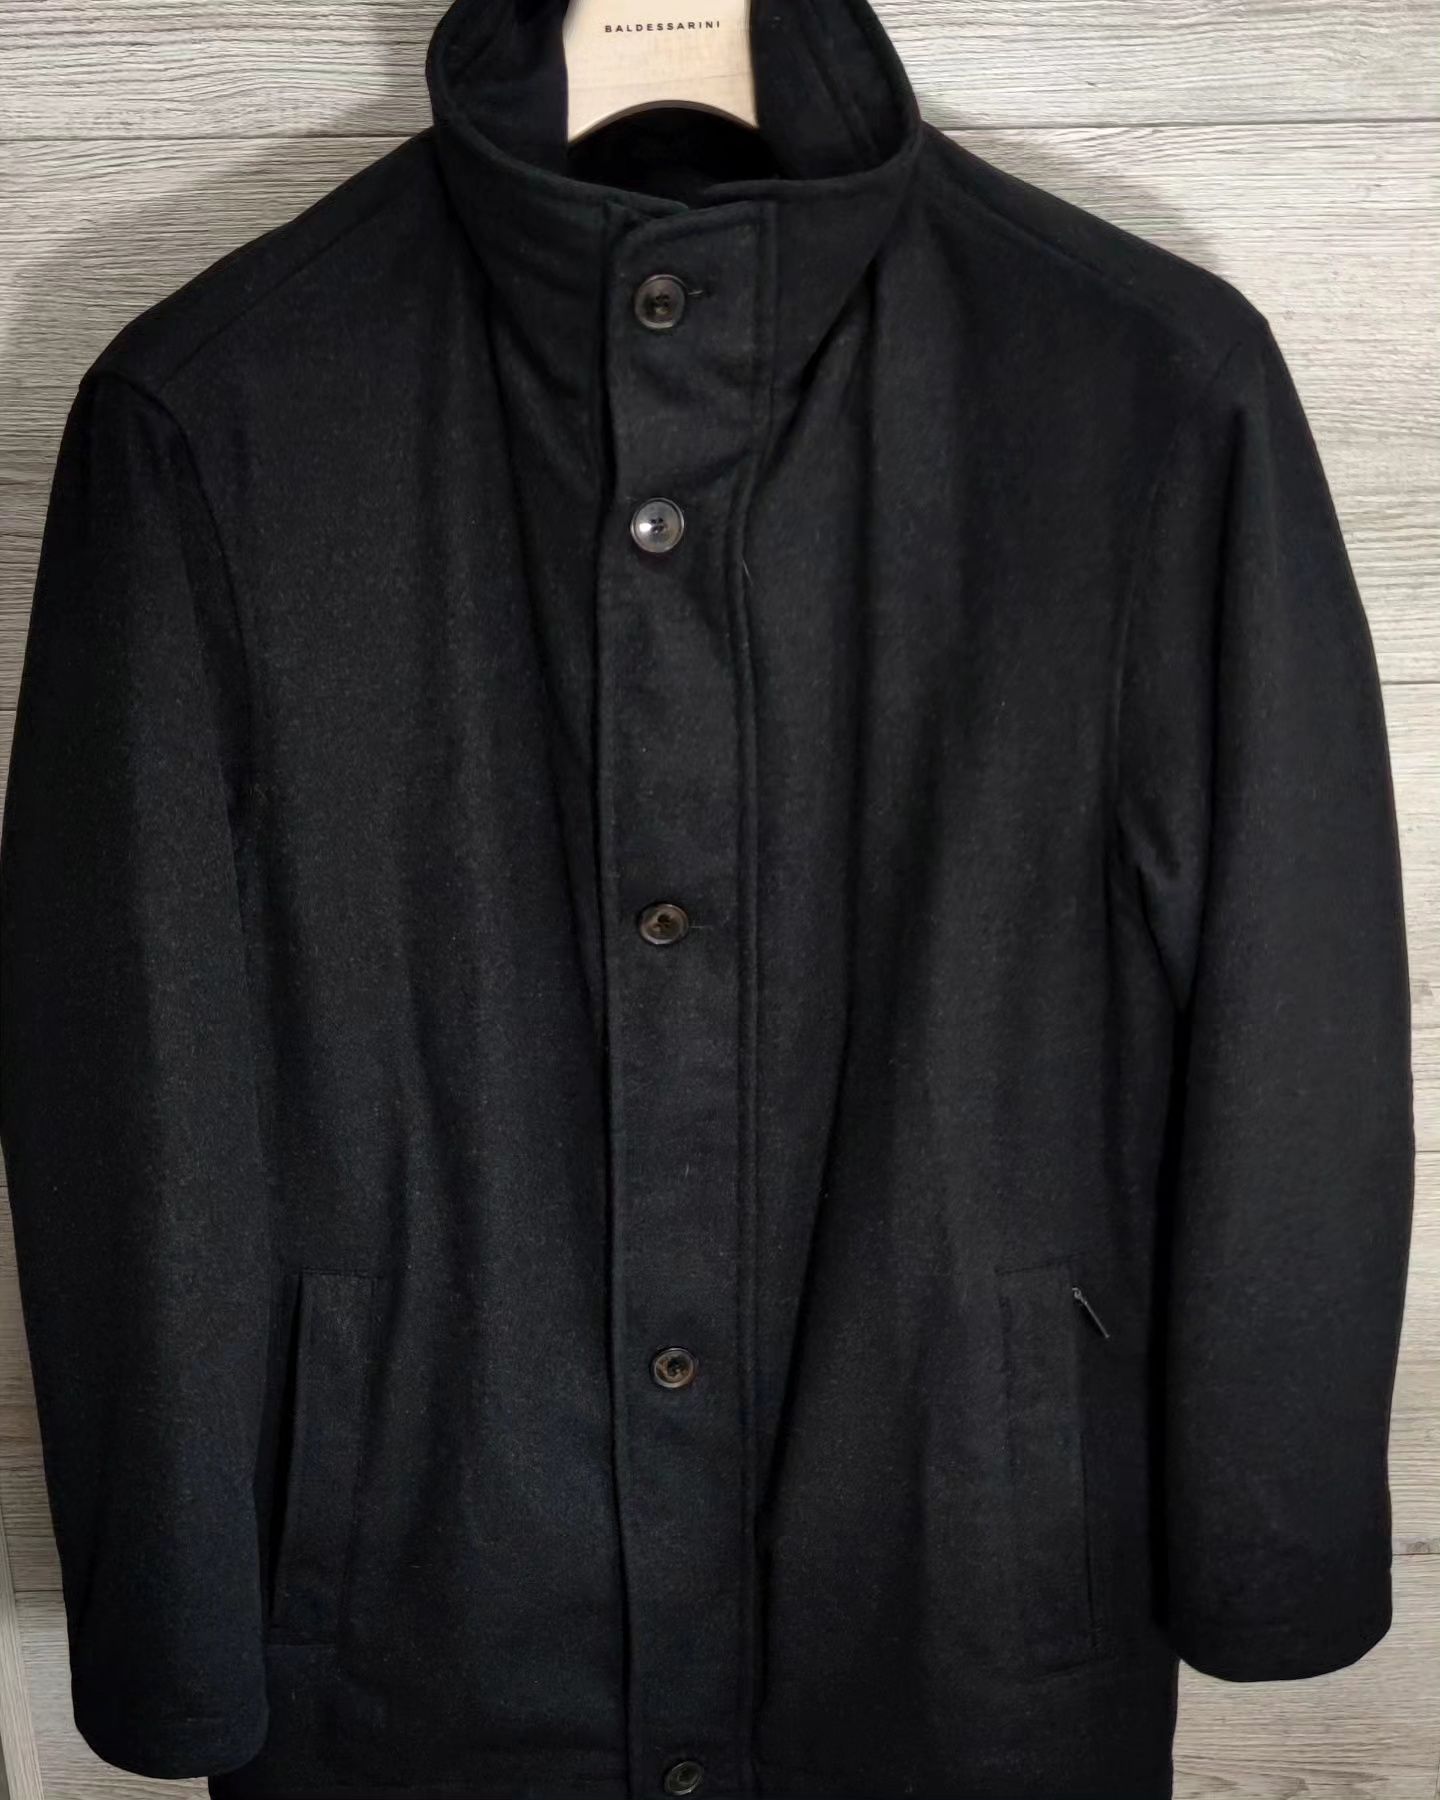 Мужские стильные пальто курточка Pierre Cardin с технологией Gore-Tex